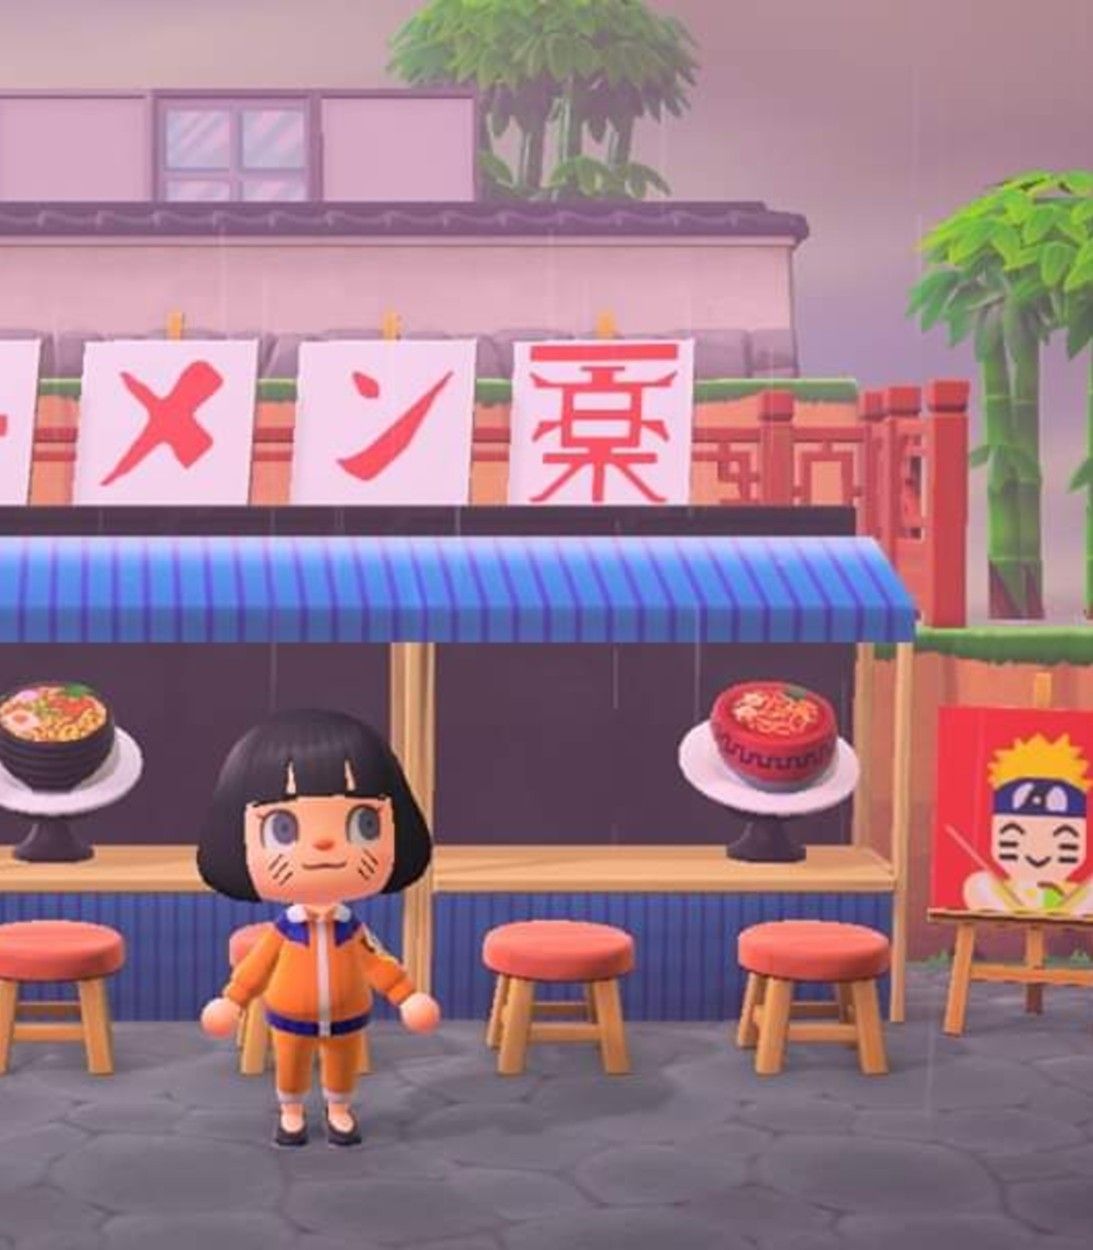 A player recreates Ichiraku Ramen from Naruto in Animal Crossing: New Horizons